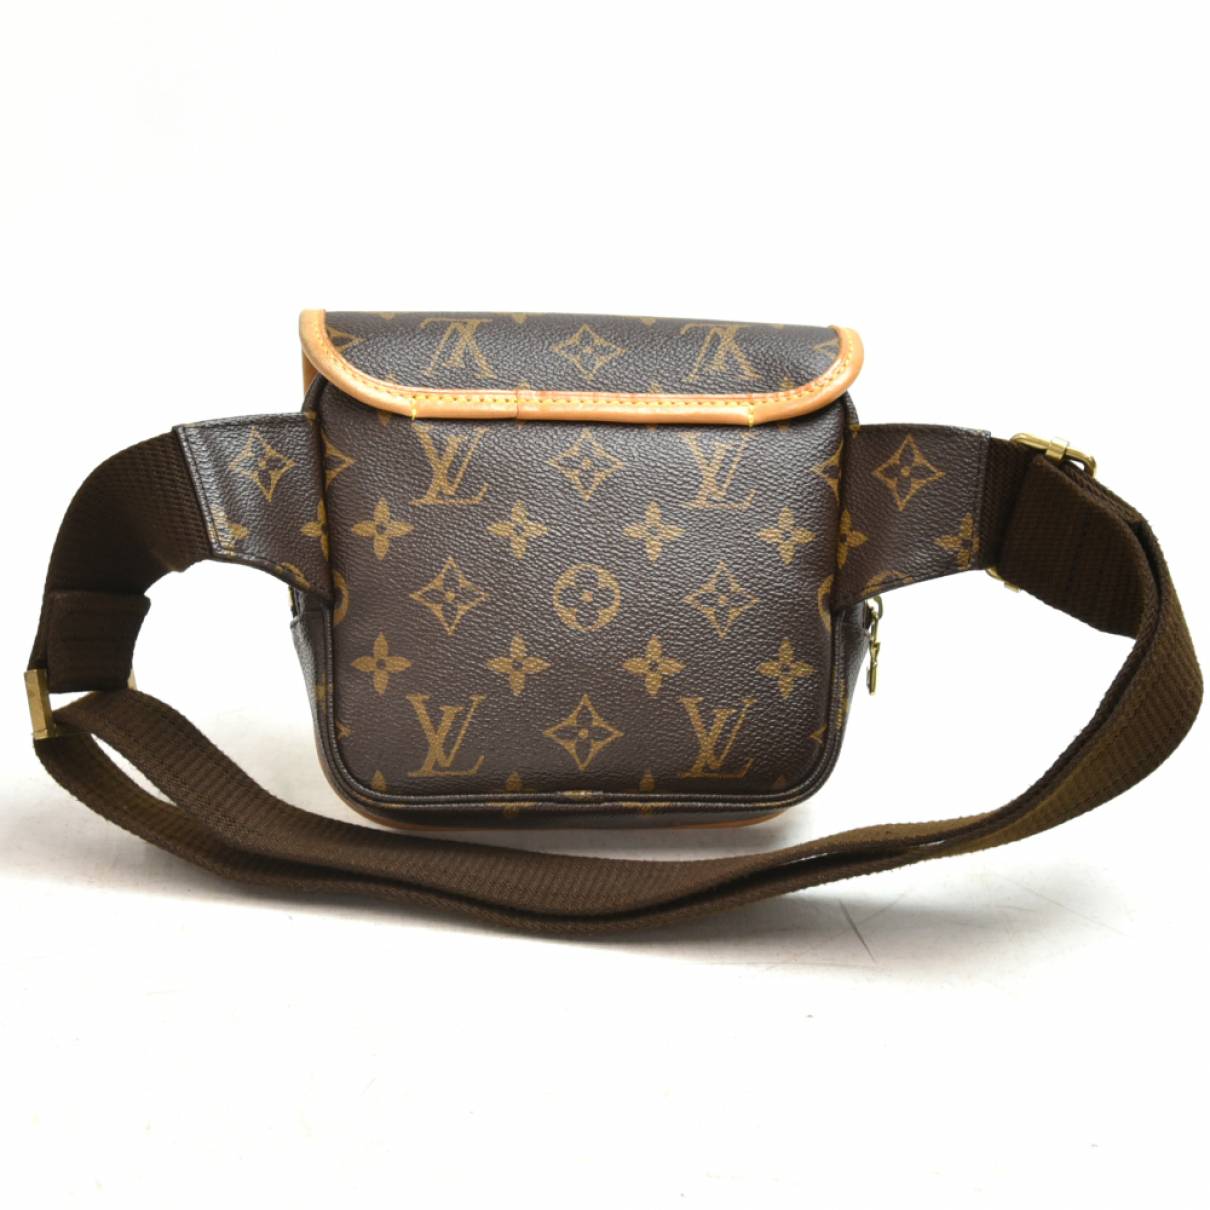 Bum bag / sac ceinture cloth handbag Louis Vuitton Brown in Cloth - 19338841